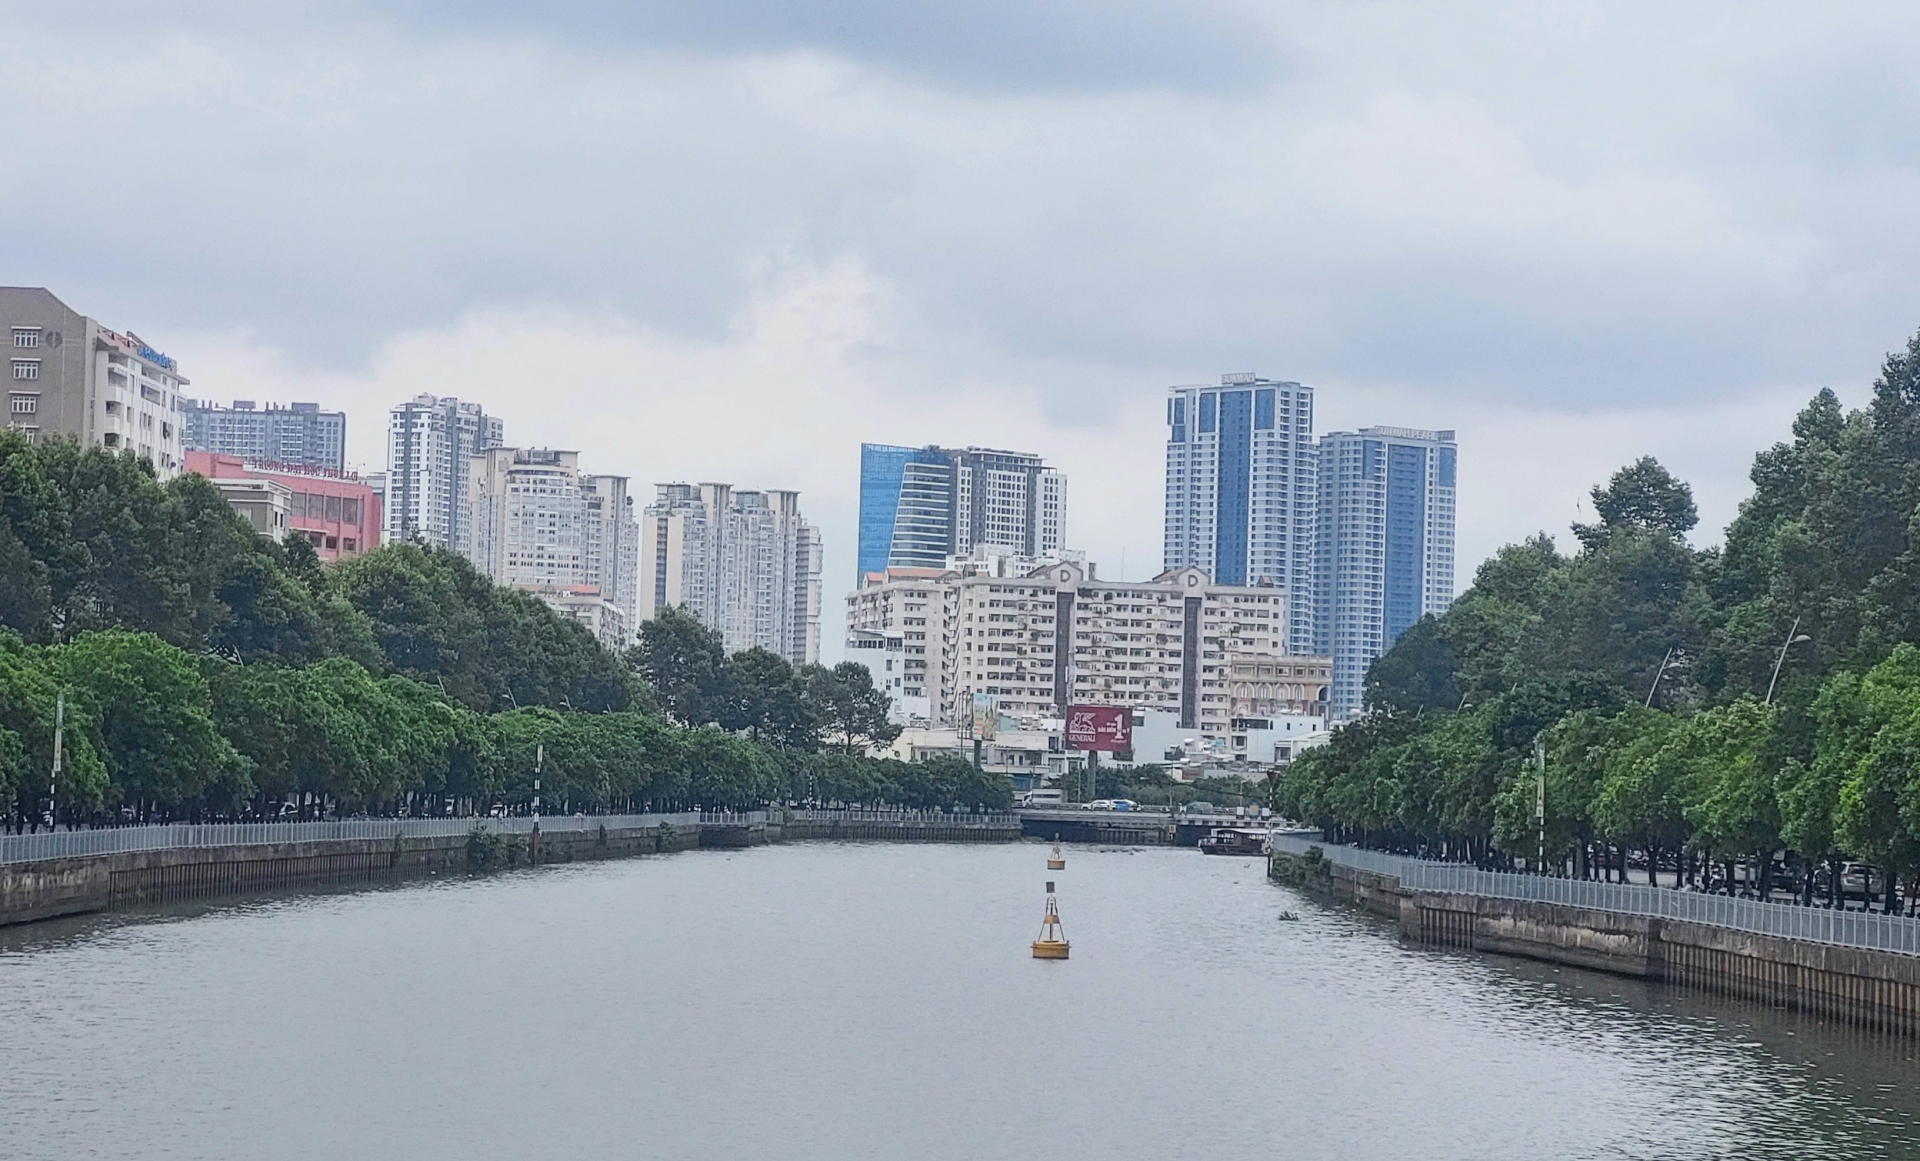 TP. Hồ Chí Minh với tham vọng trở thành trung tâm “tài chính xanh” của cả nước